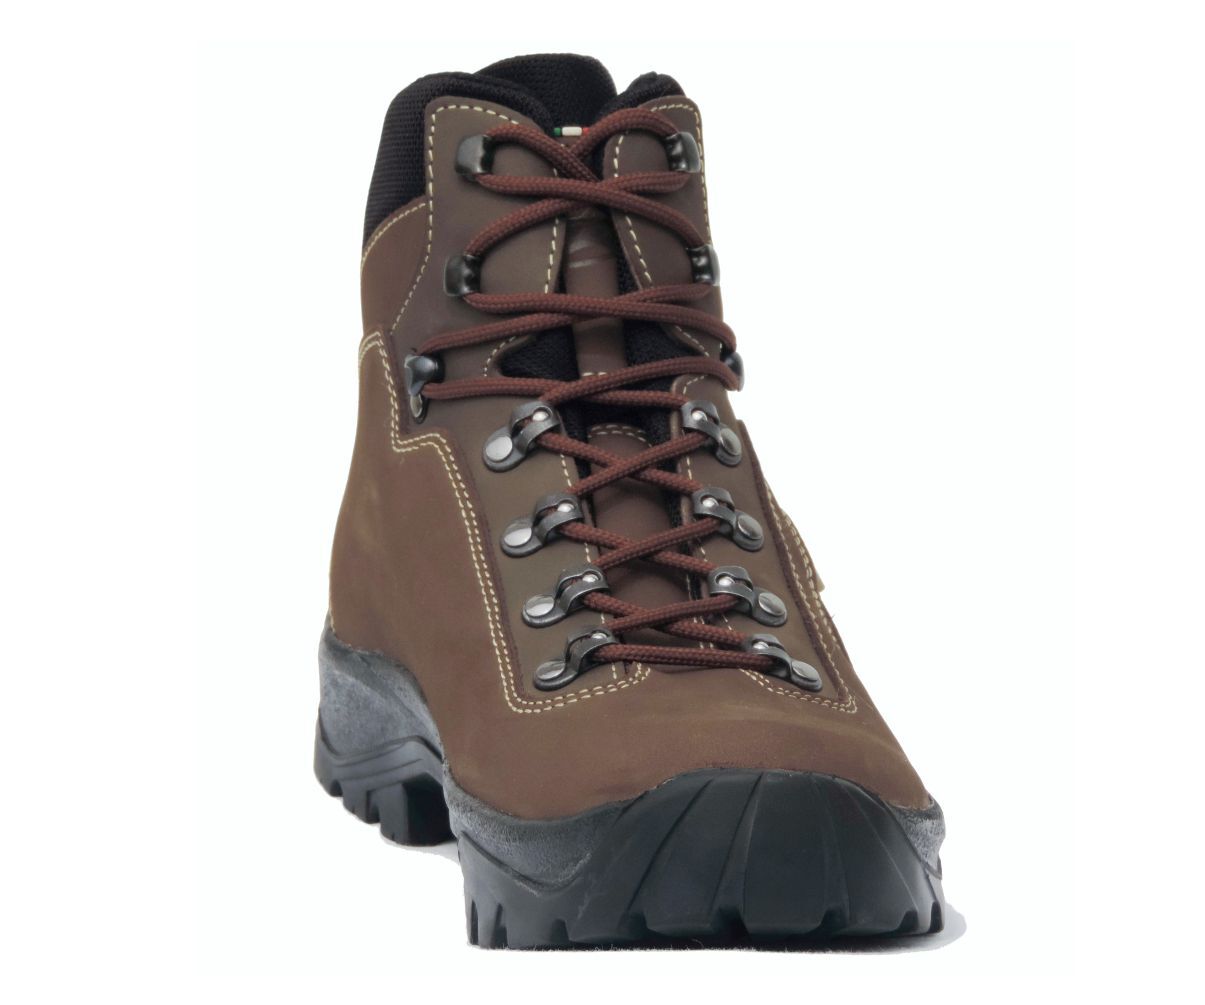 Eagleye Gaerne Aspen Waterproof Boots - Nubuck Hs Leather #aspen [44]